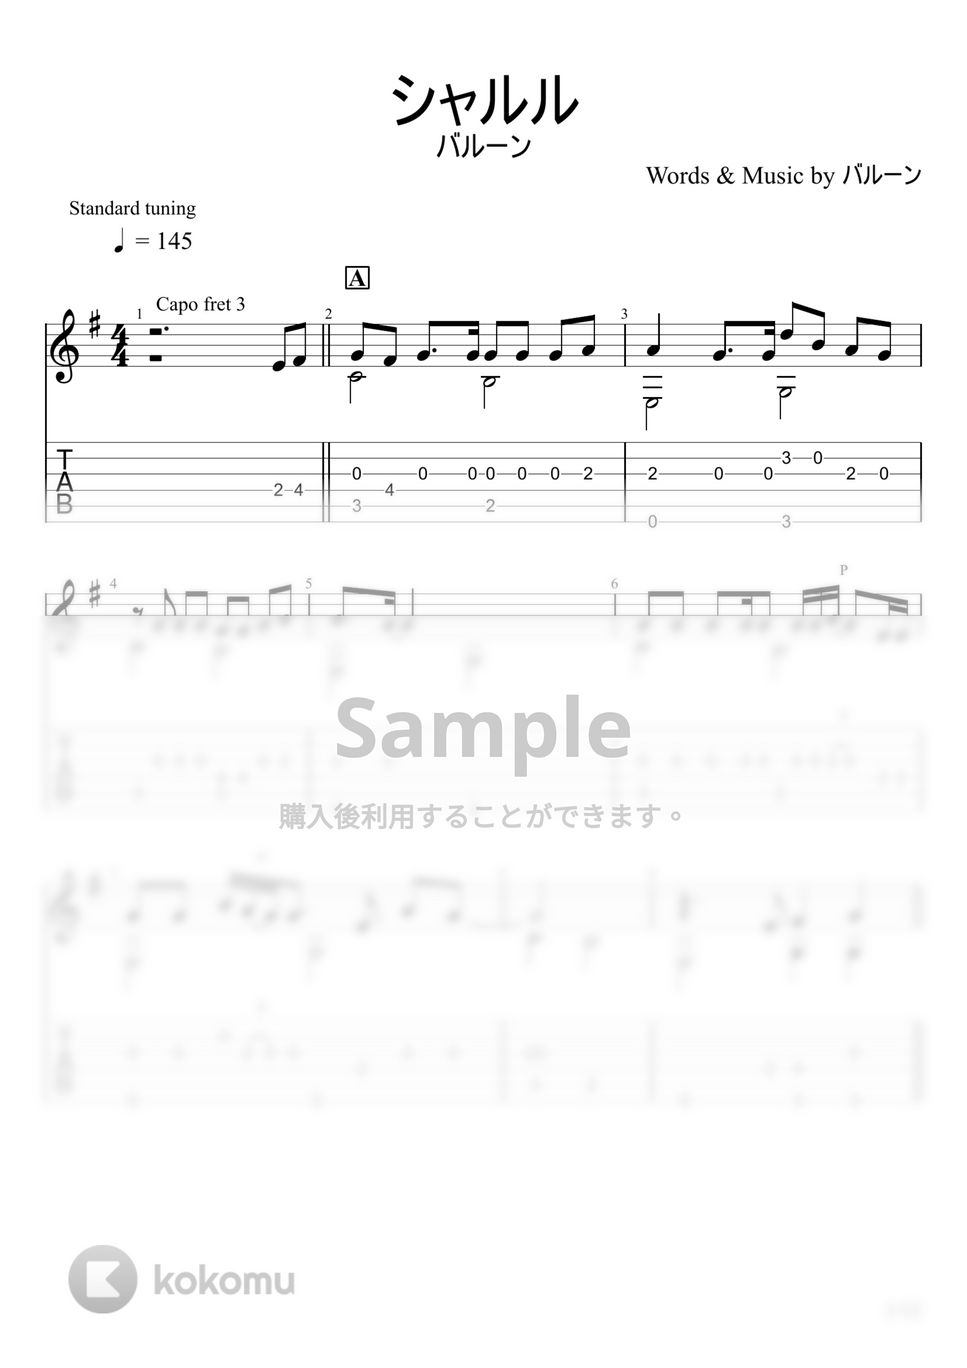 バルーン - シャルル (ソロギター) by u3danchou